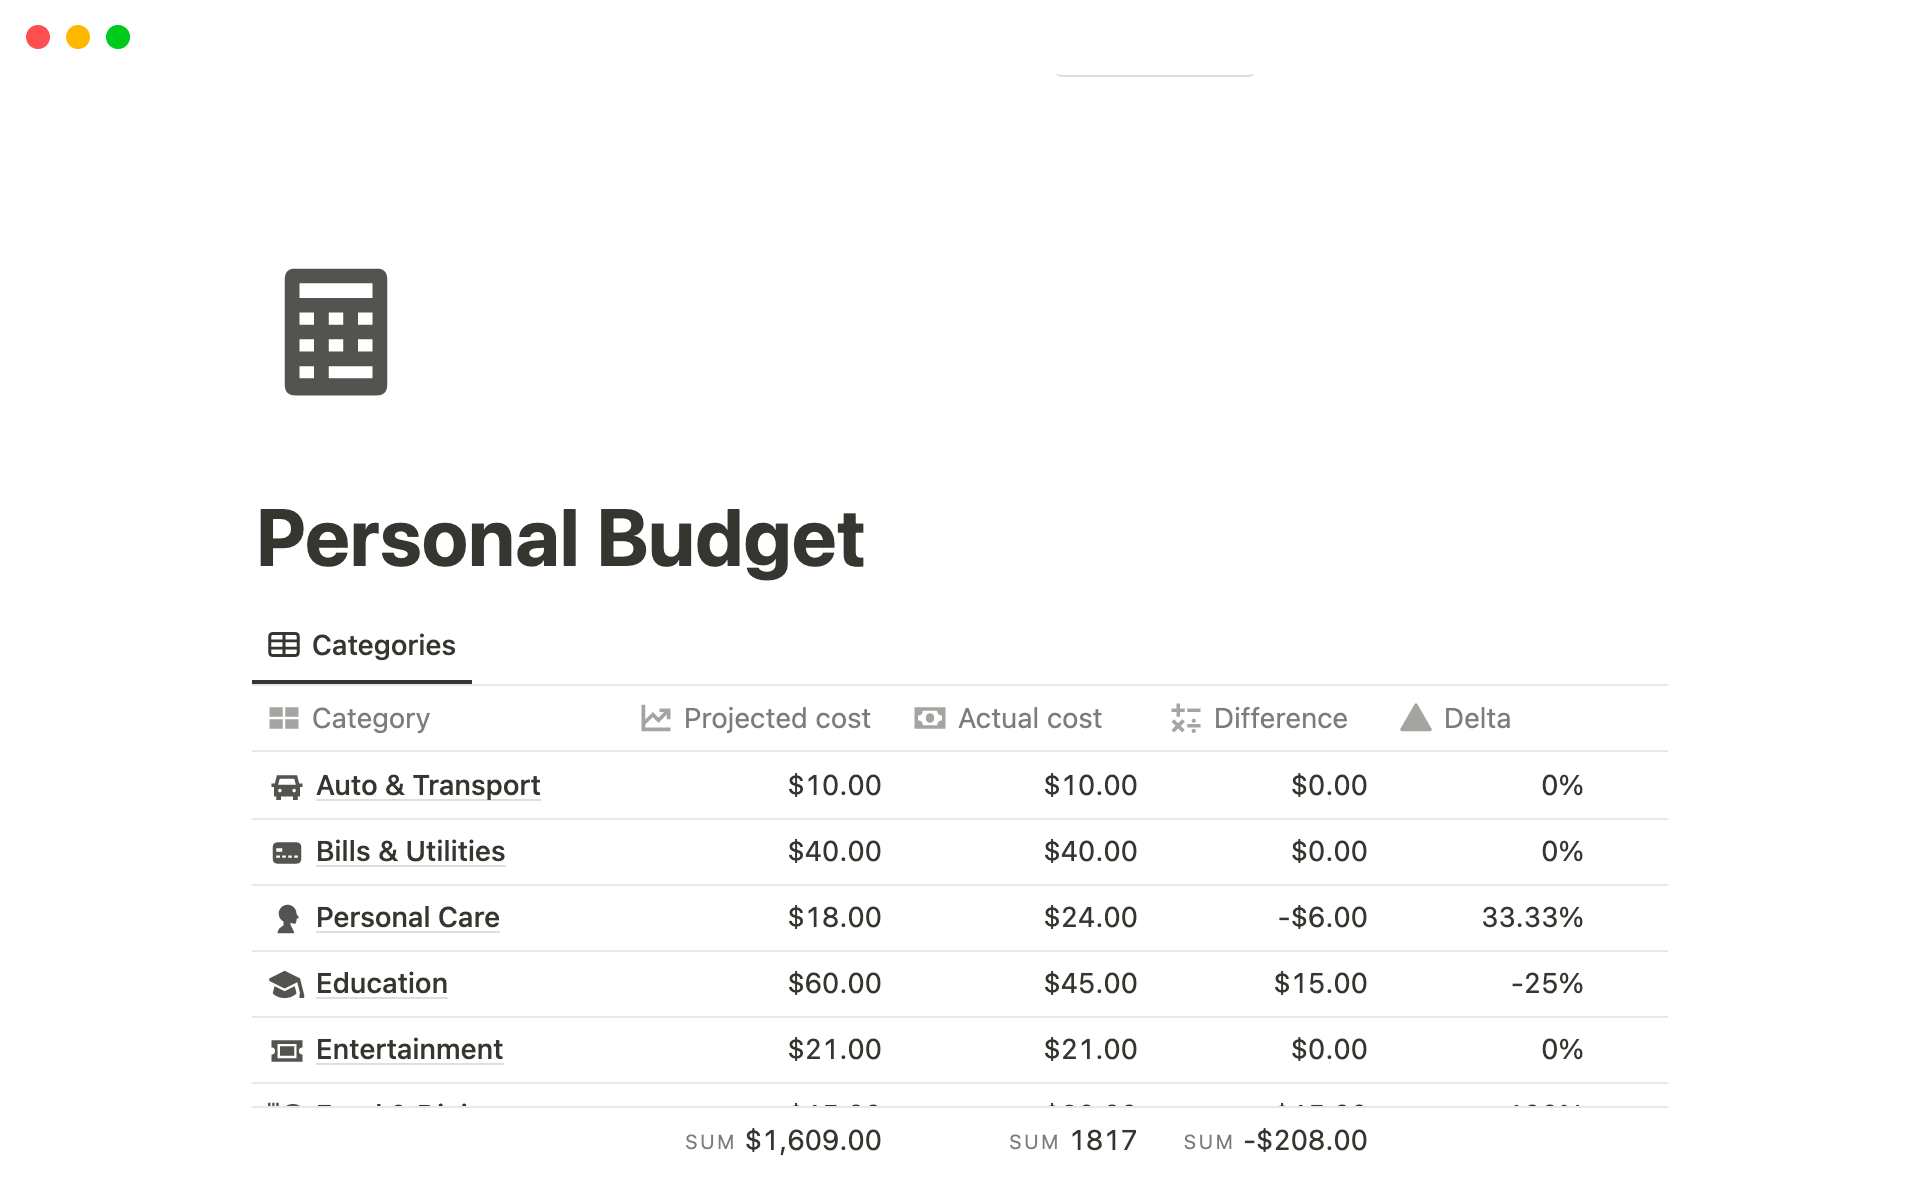 En forhåndsvisning av mal for Personal Budget Tracker